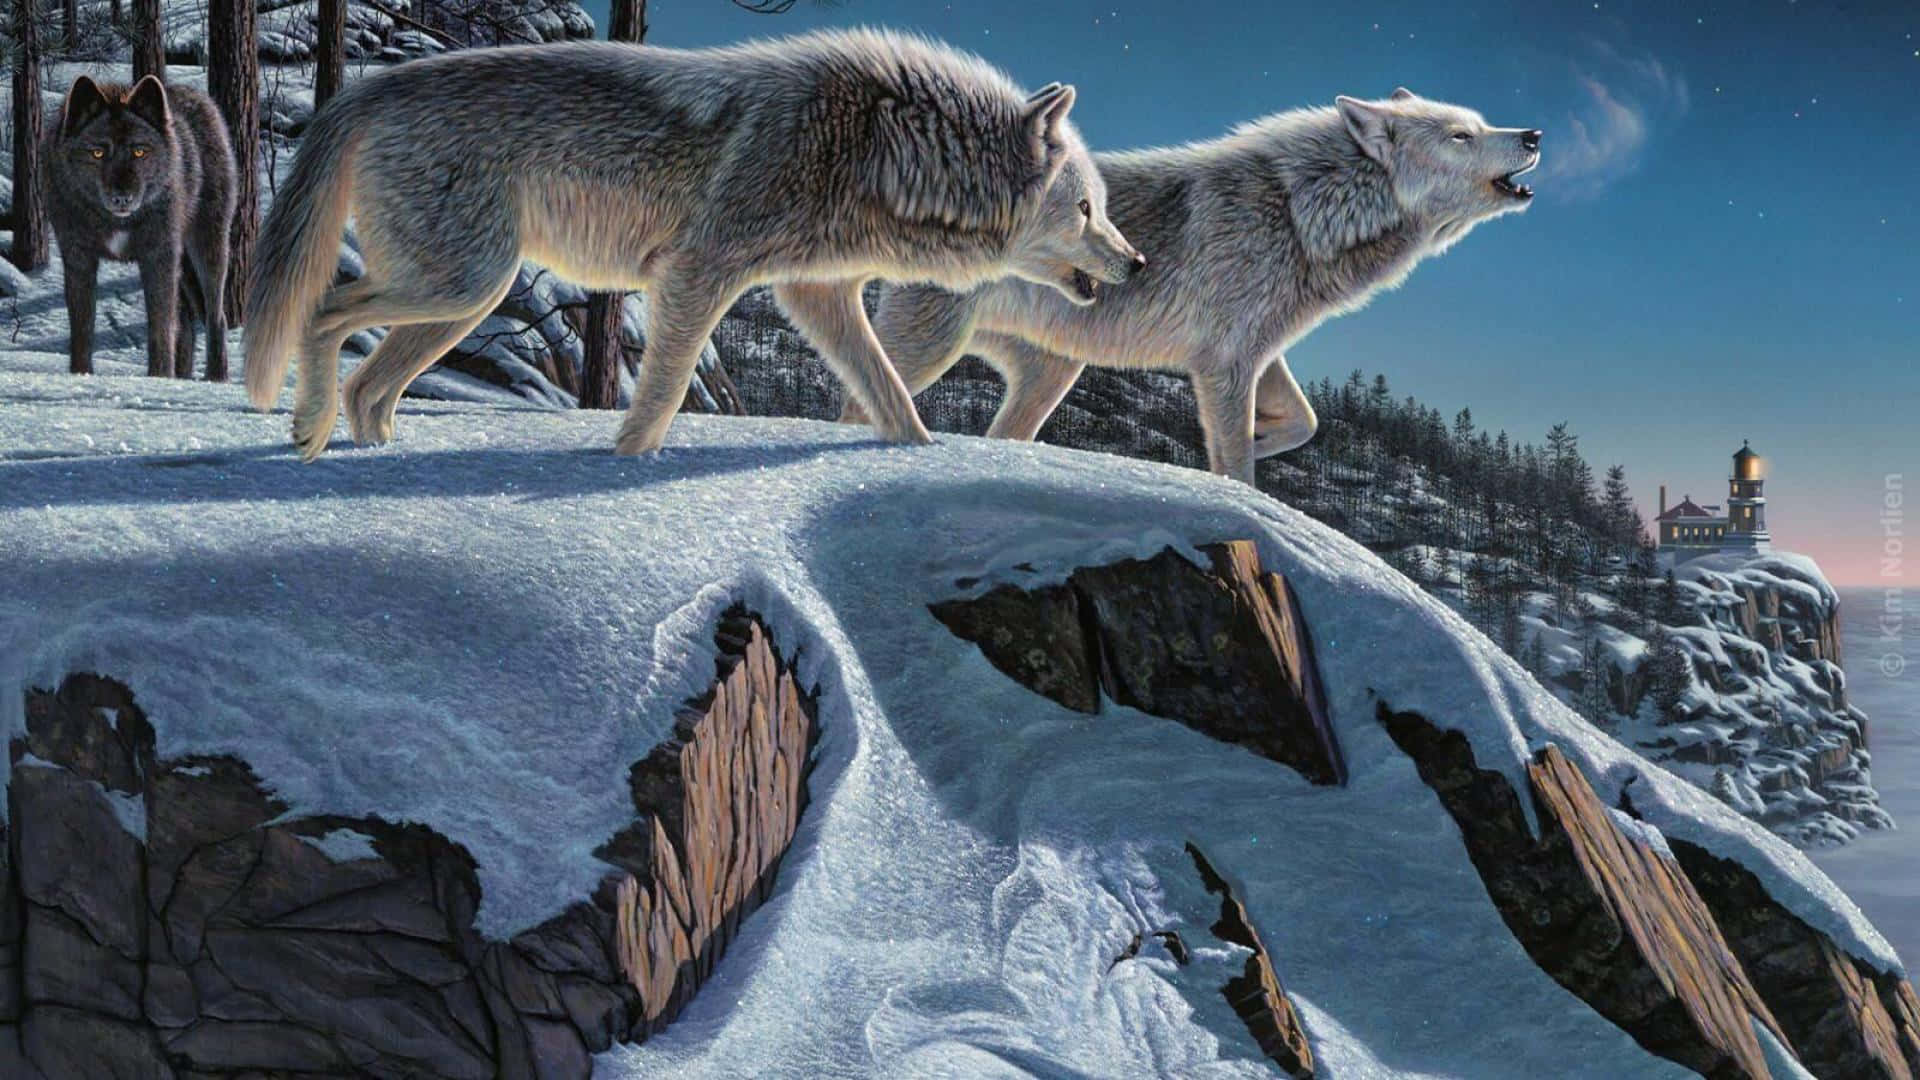 Wolf In Winter 1920 X 1080 Wallpaper Wallpaper